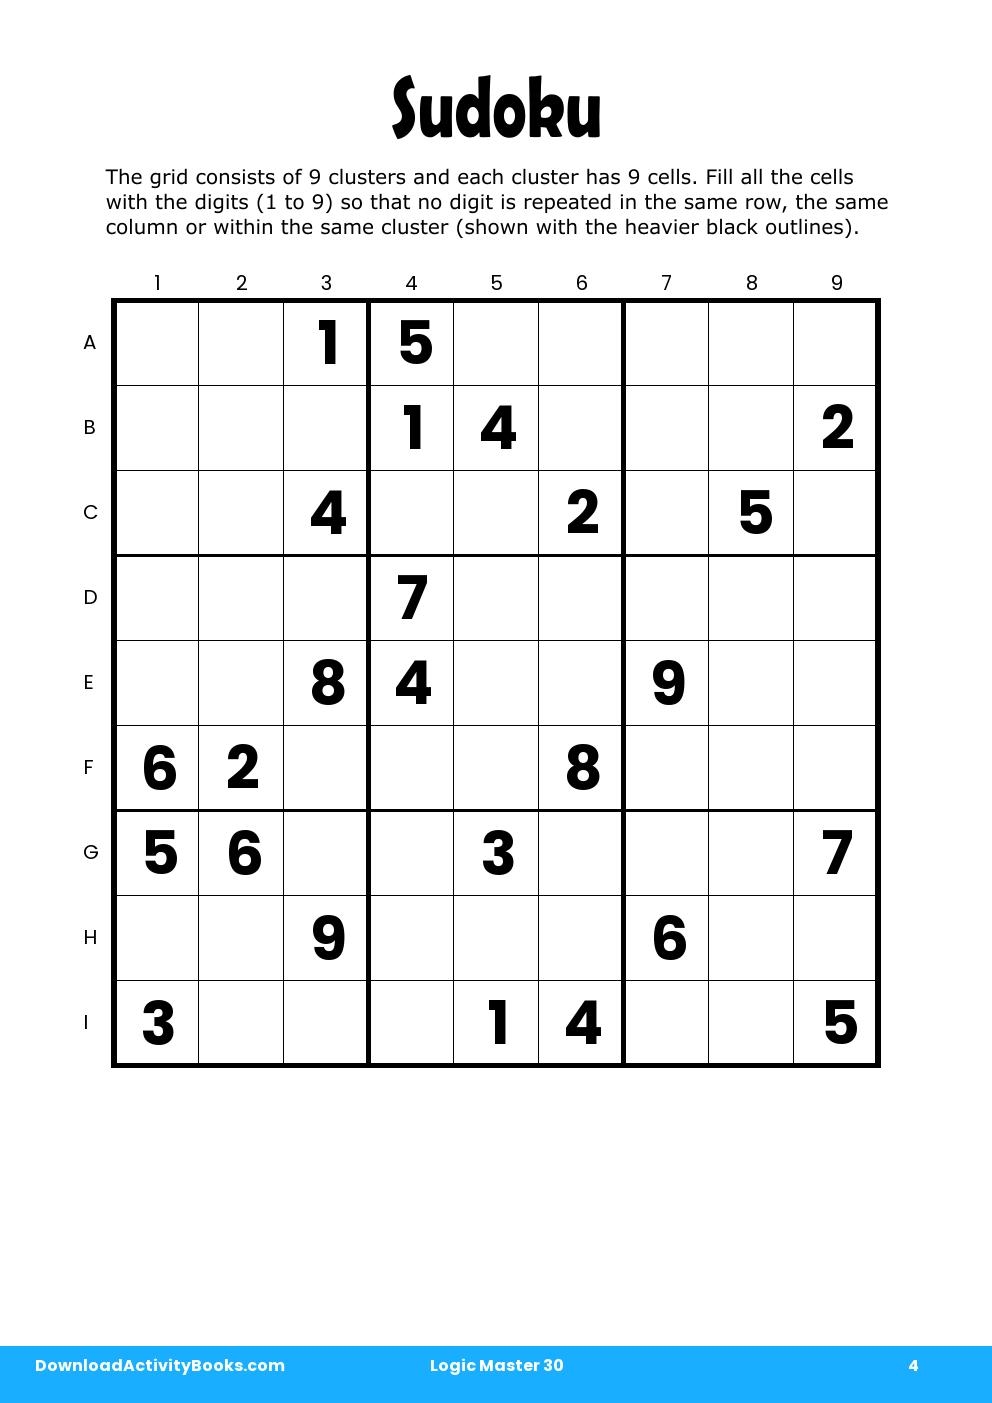 Sudoku in Logic Master 30